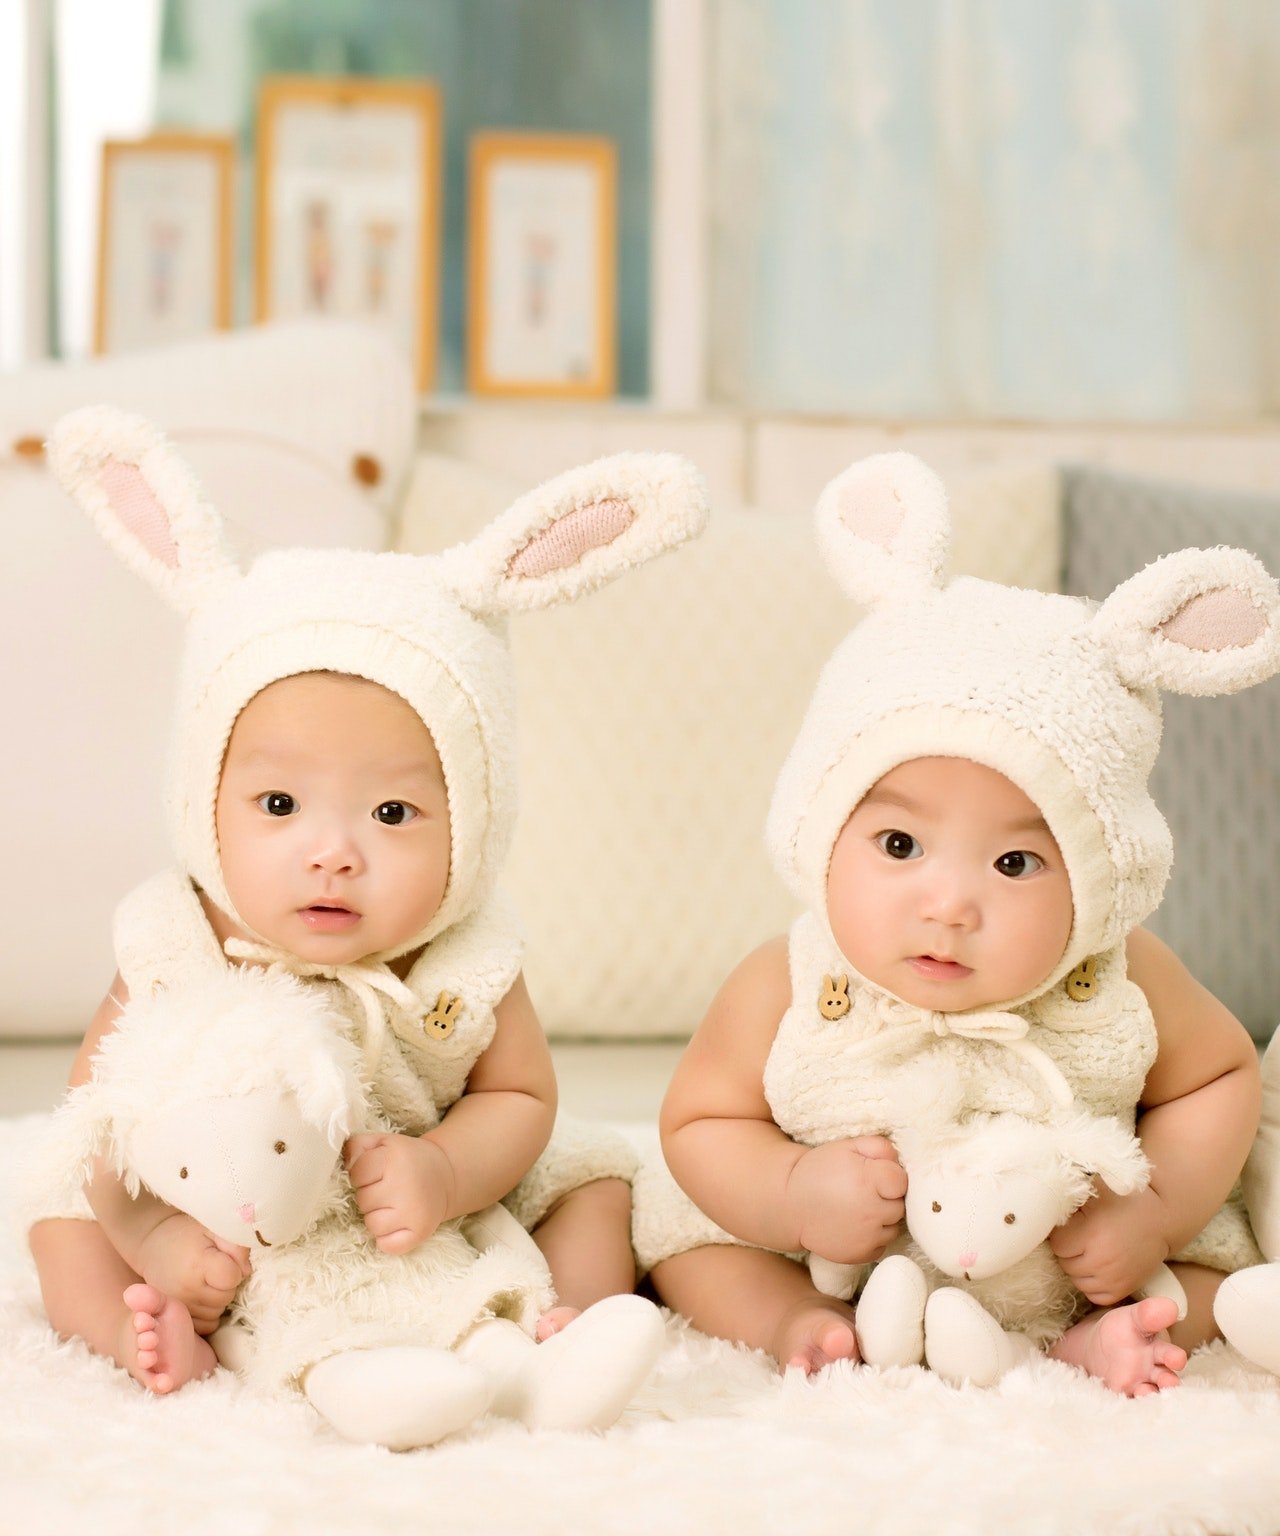 Twin babies | Source: Pexels